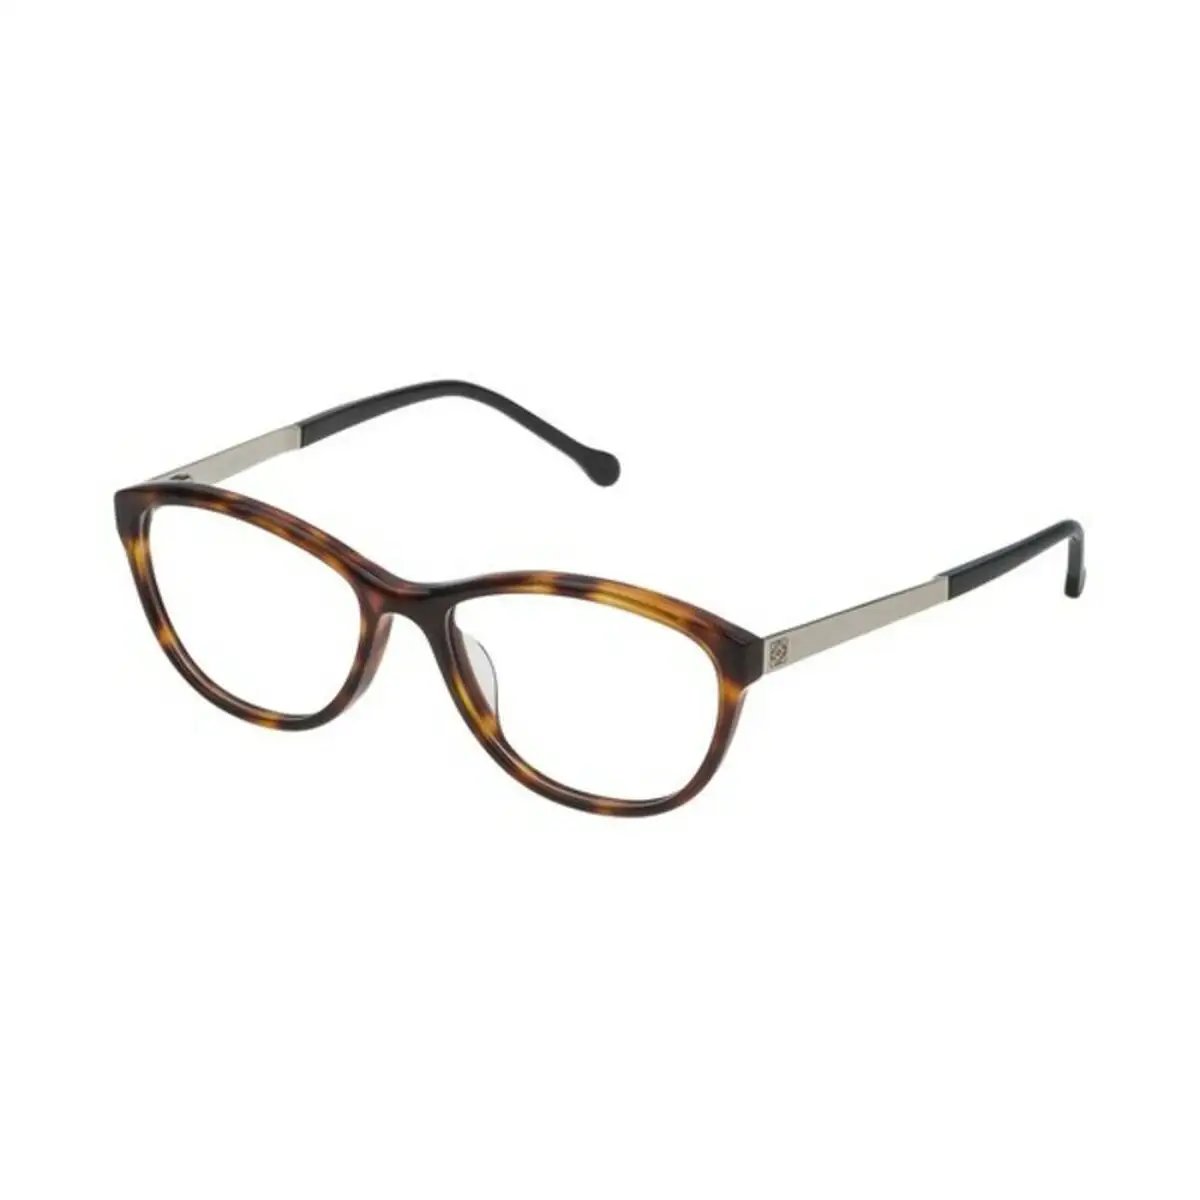 Monture de lunettes femme loewe vlwa04m530748 orange o 53 mm _4092. DIAYTAR SENEGAL - L'Univers de l'Élégance Accessible. Plongez dans notre catalogue et choisissez des produits qui allient sophistication et accessibilité pour un shopping exquis.